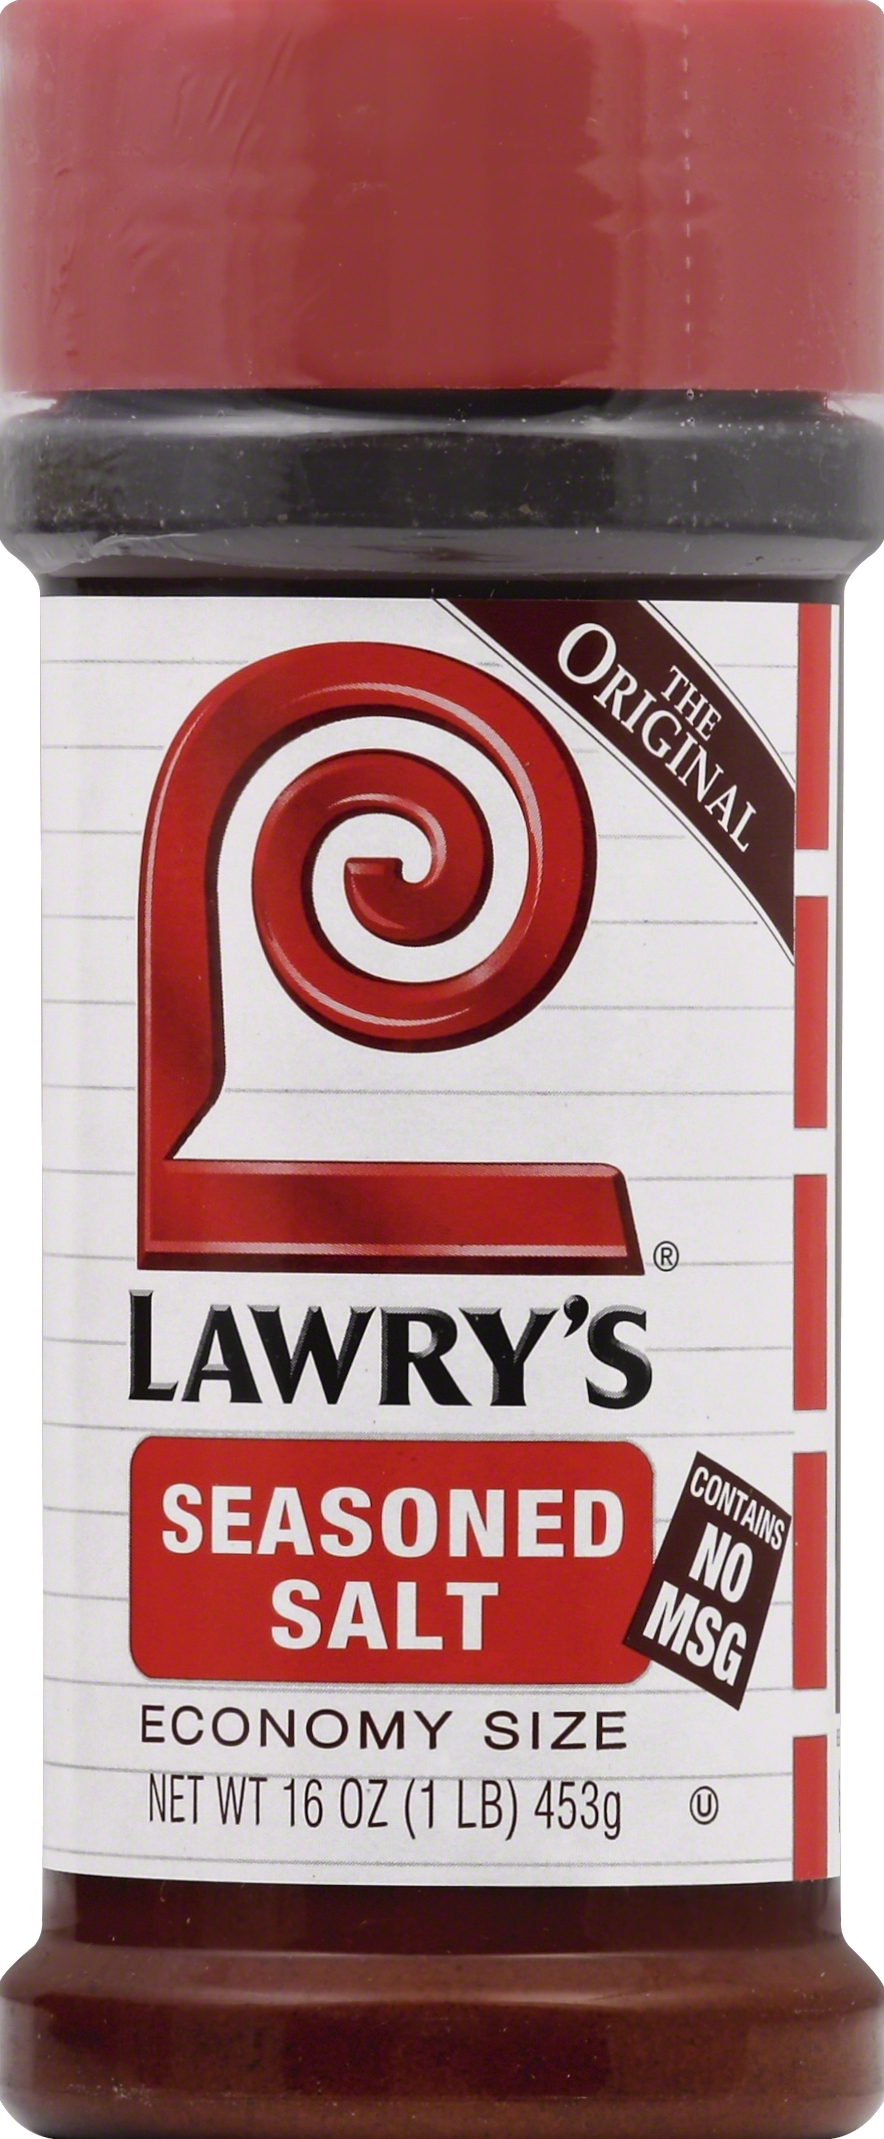 Lawry's Seasoning, Salt-Free 17 - 20 oz